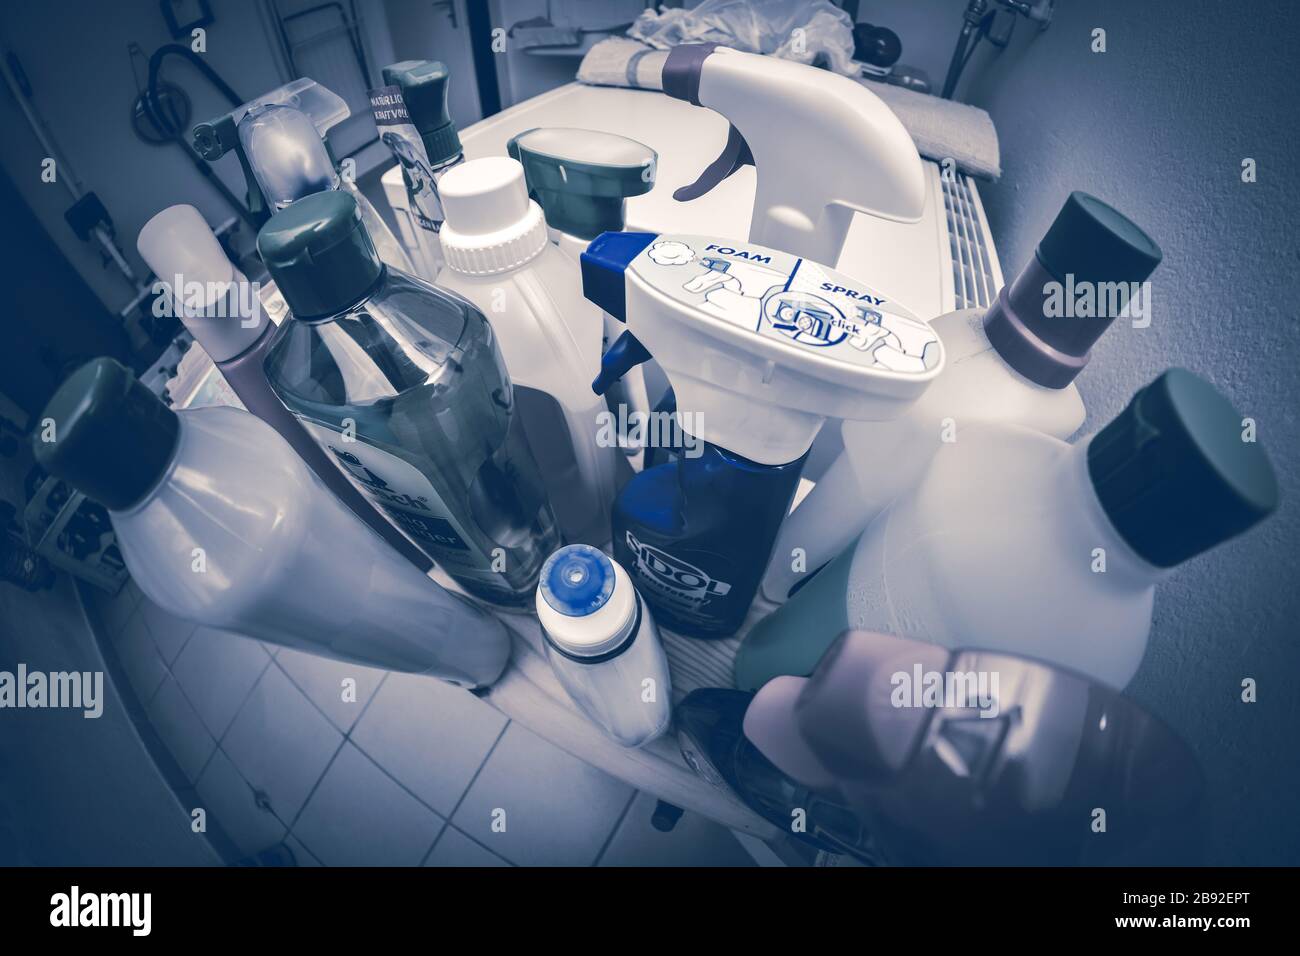 Cleaning agent on a shelve, Reinigungsmittel auf einem Regal Stock Photo